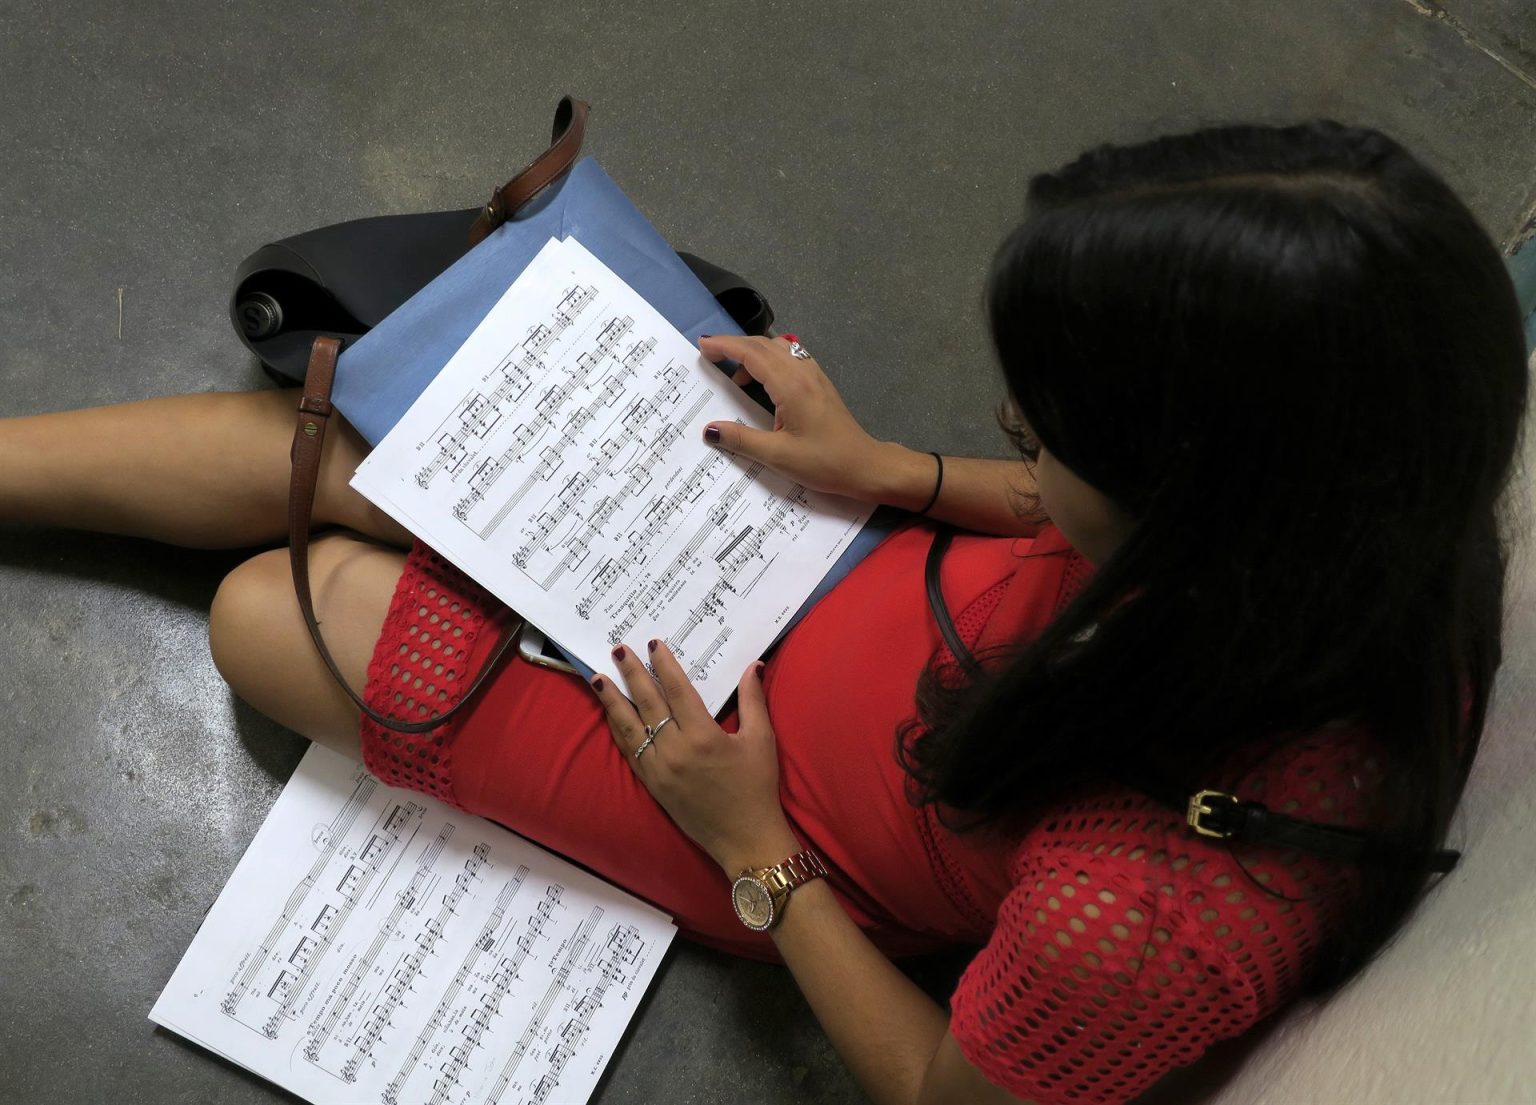 Una joven revisa unas partituras musicales en el campus de Río Piedras, en San Juan (Puerto Rico). EFE/Jorge Muñiz